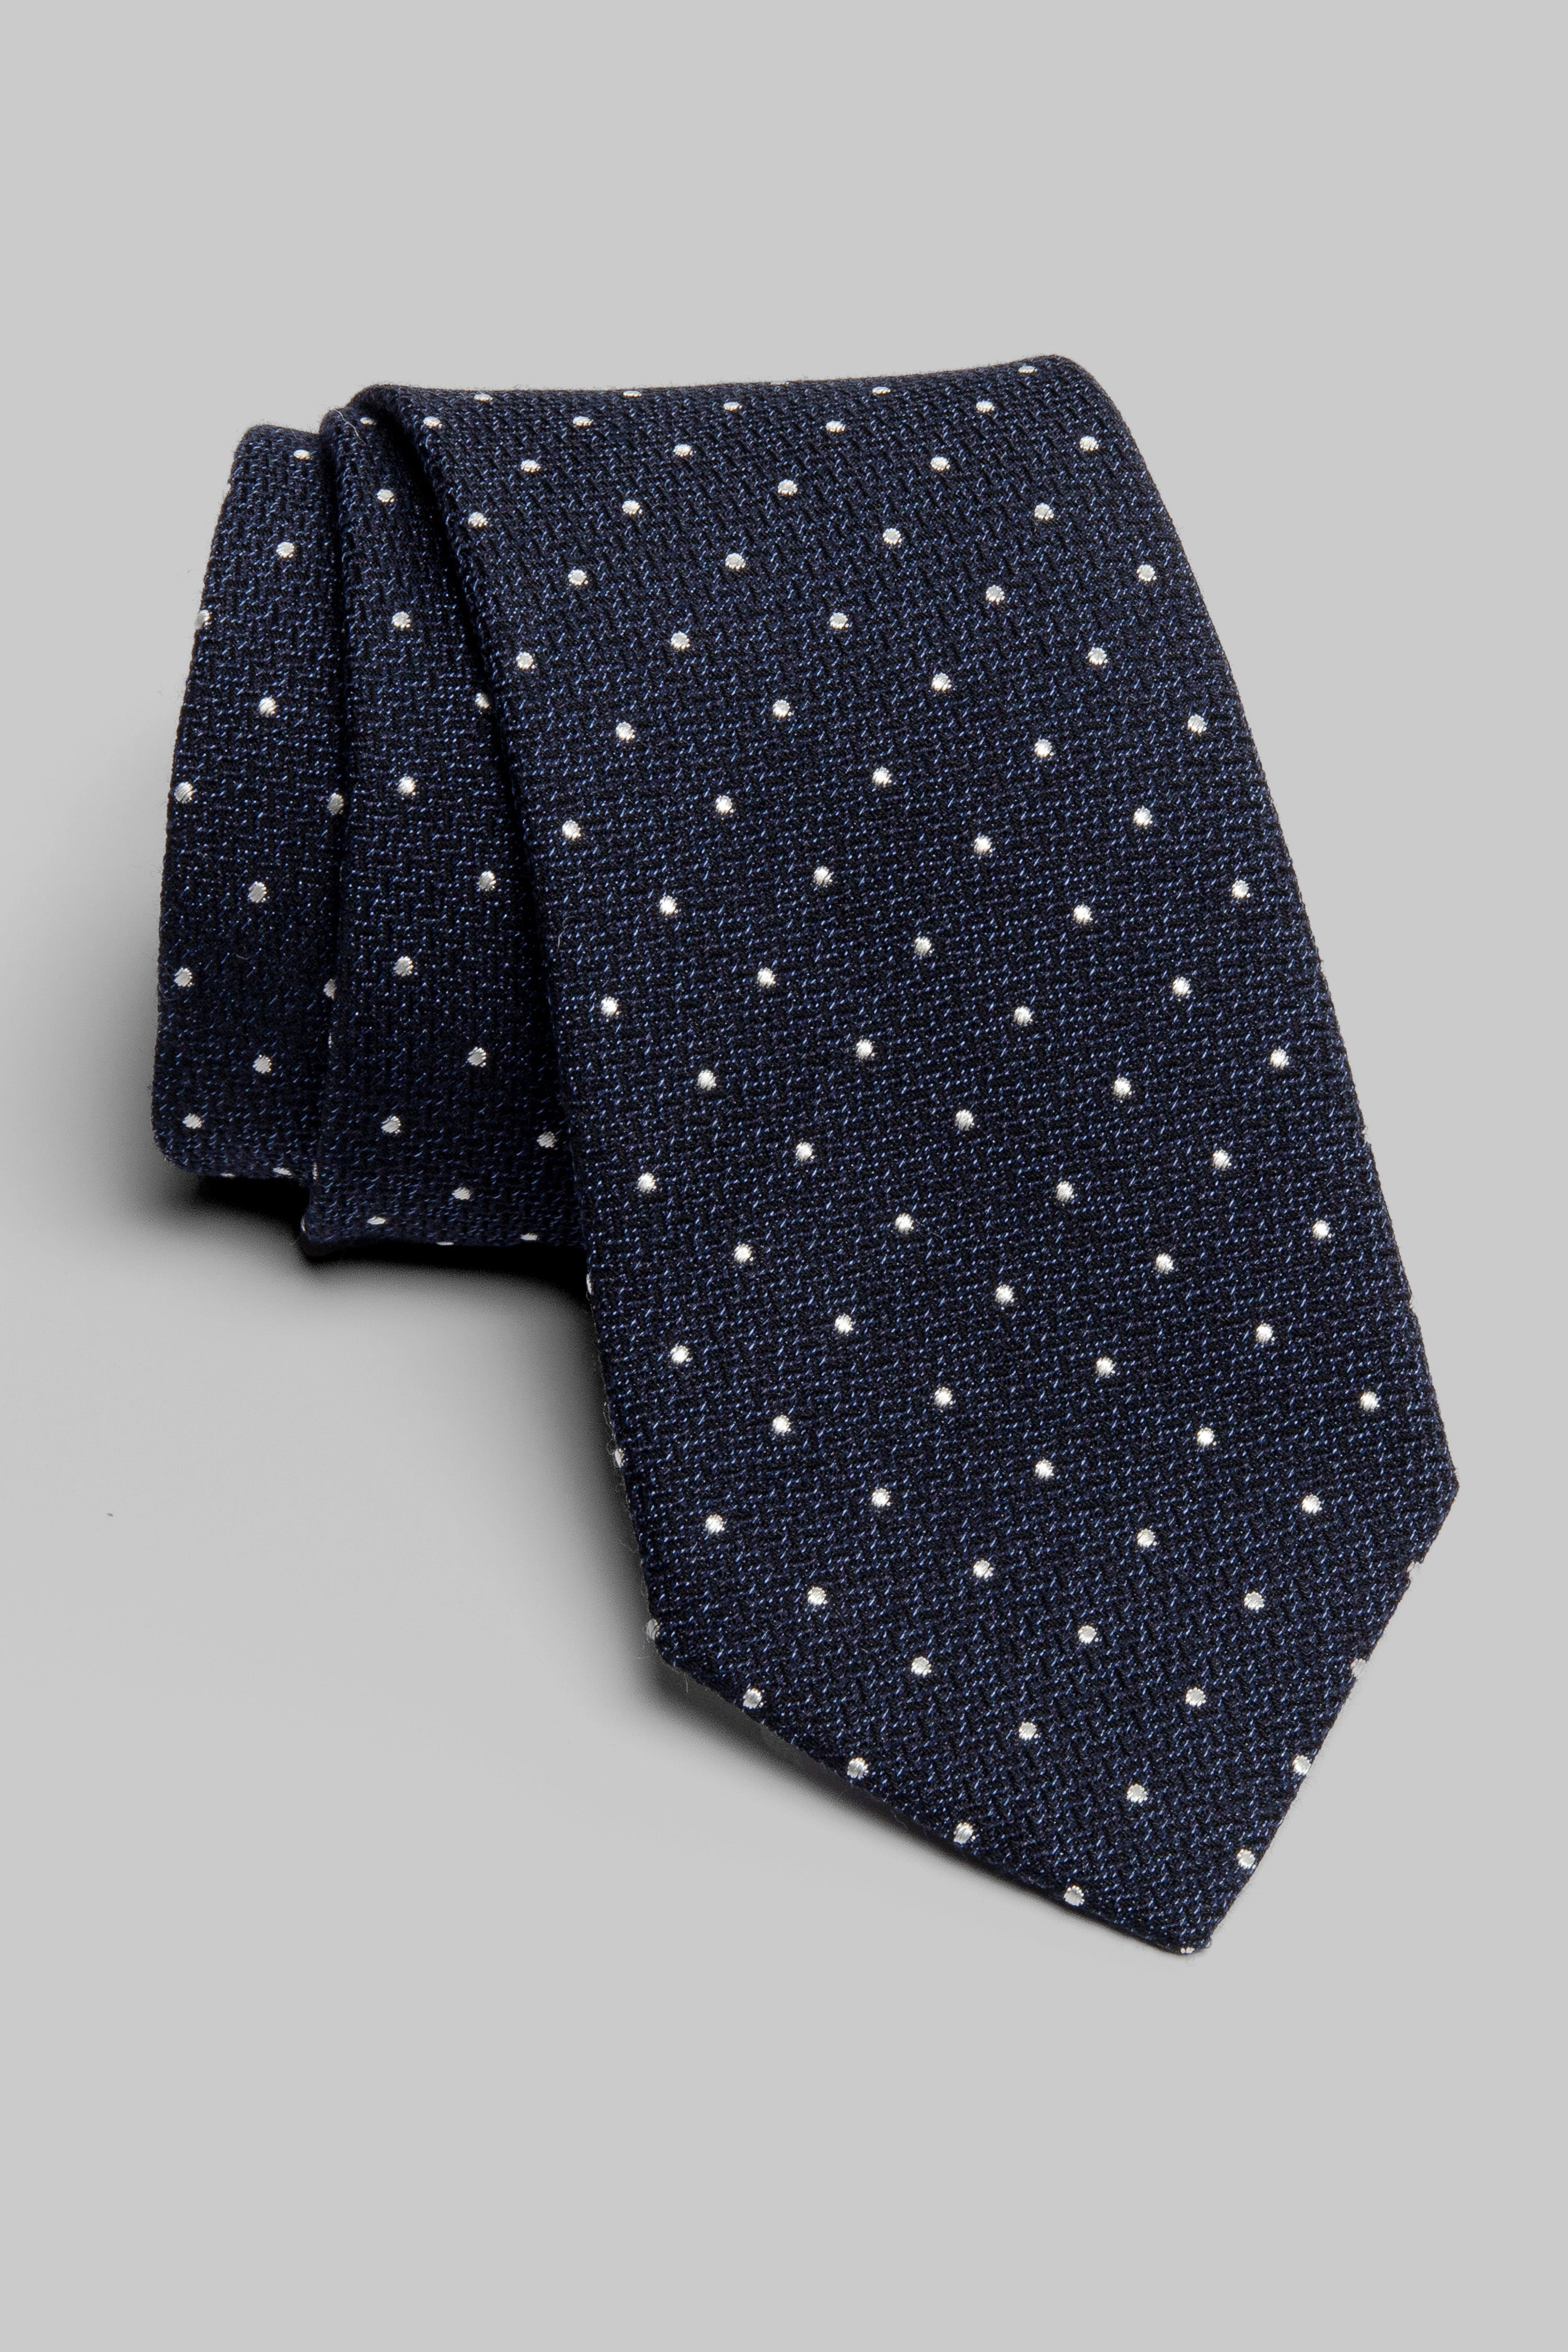 Vue alternative Cravate Tissée À Pois Marine